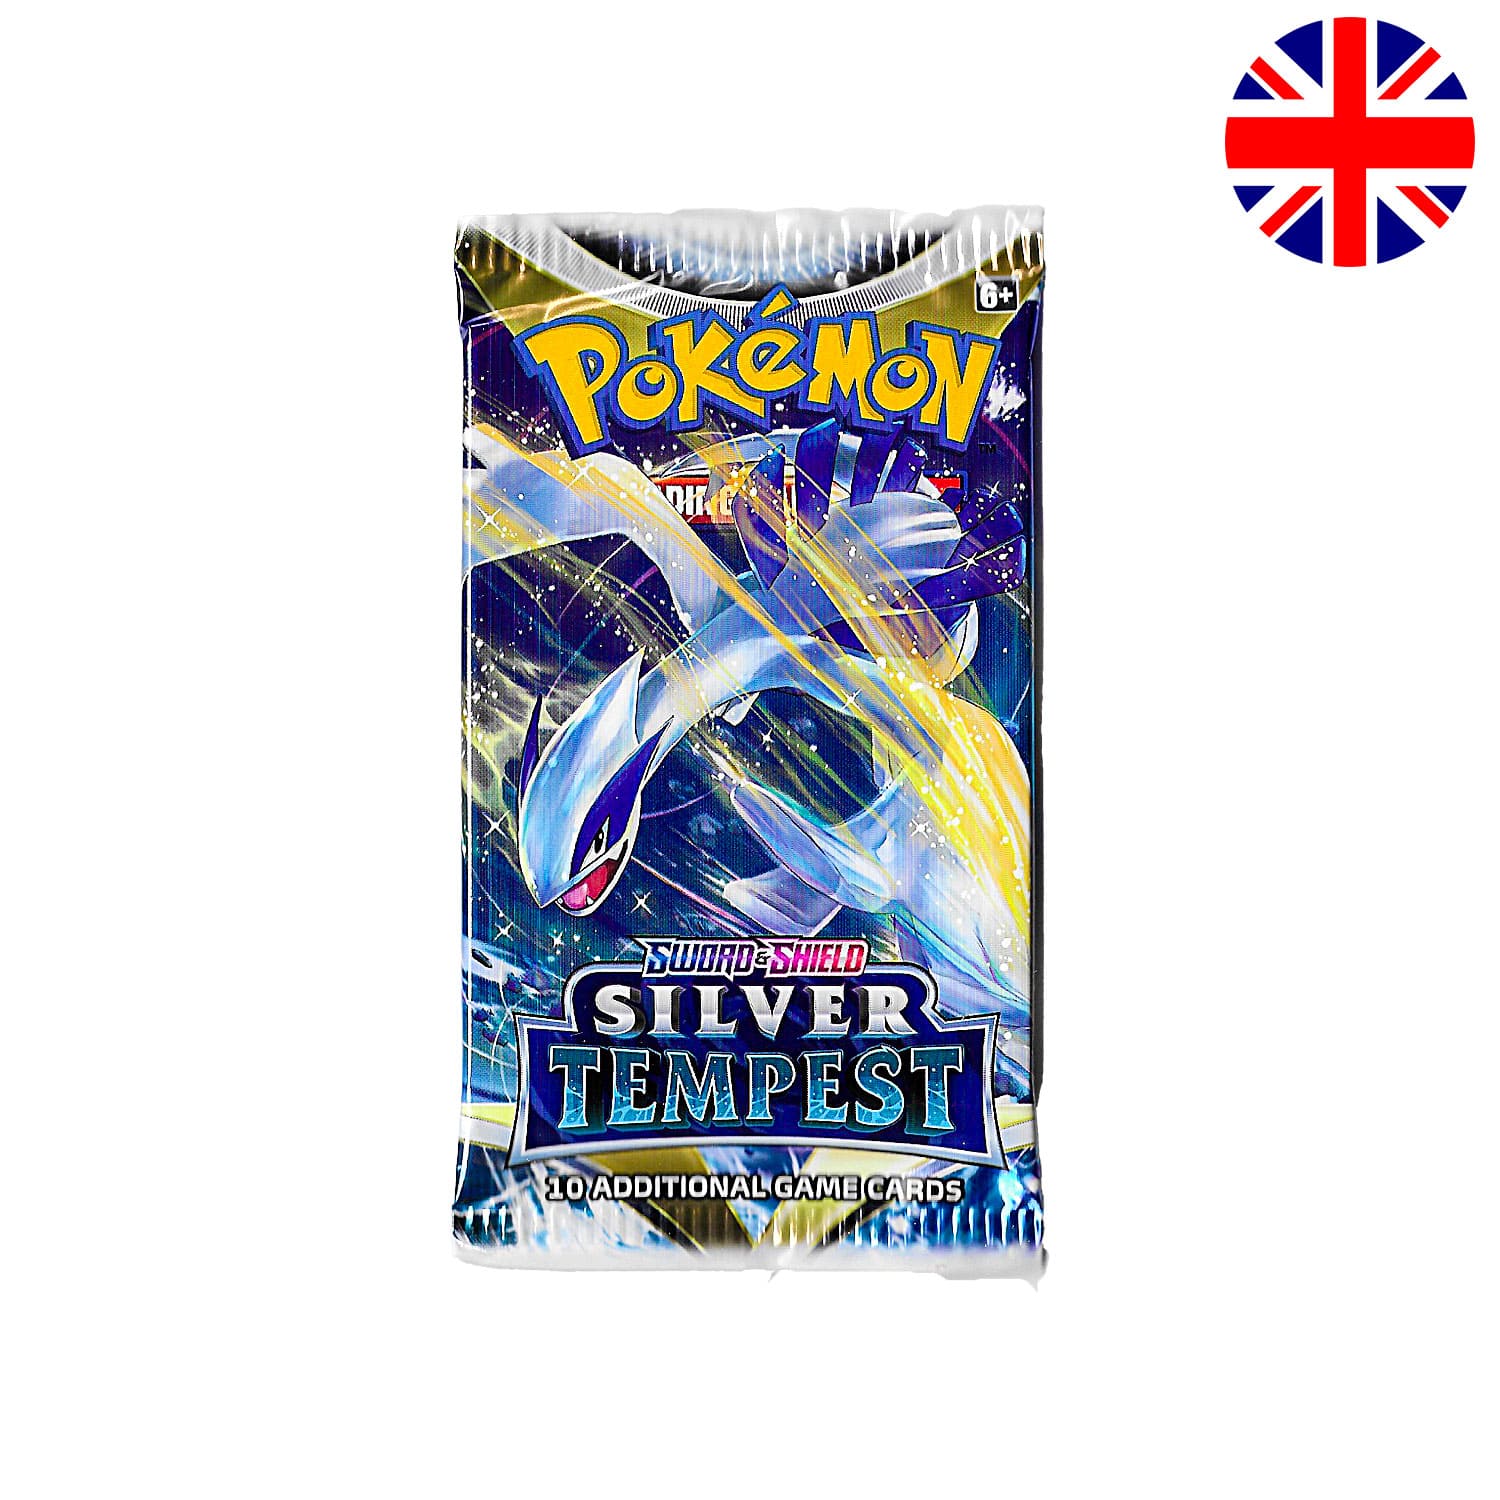 Das Pokemon Boosterpack Silver Tempest als Scan mit Lugia als Hauptbild und der Flagge Englands in der Ecke.